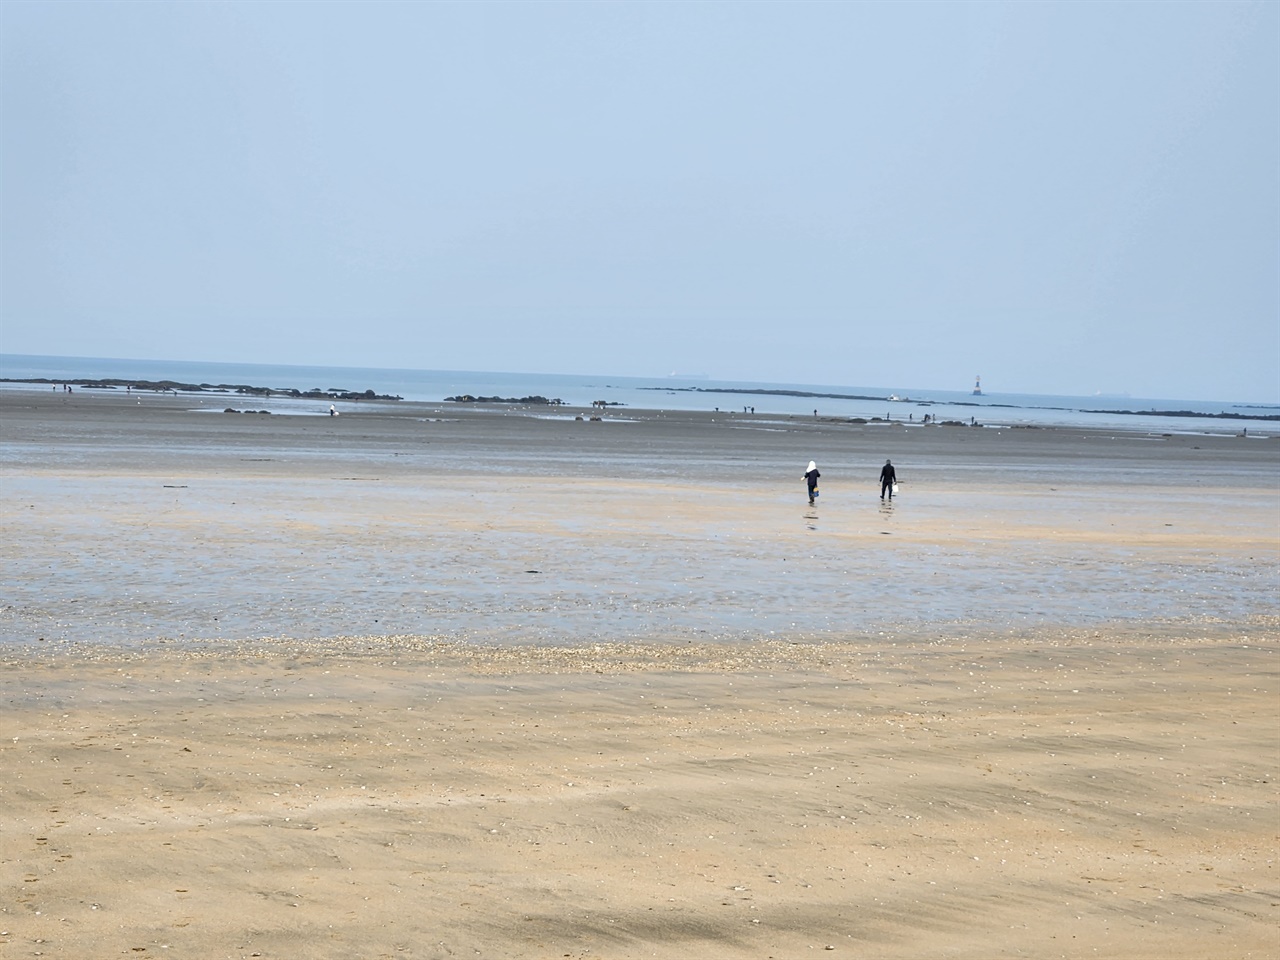 설 연휴 기간인 지난 11일. 독산 해수욕장 해루질을 하고 있는 여행객들의 모습이다.  